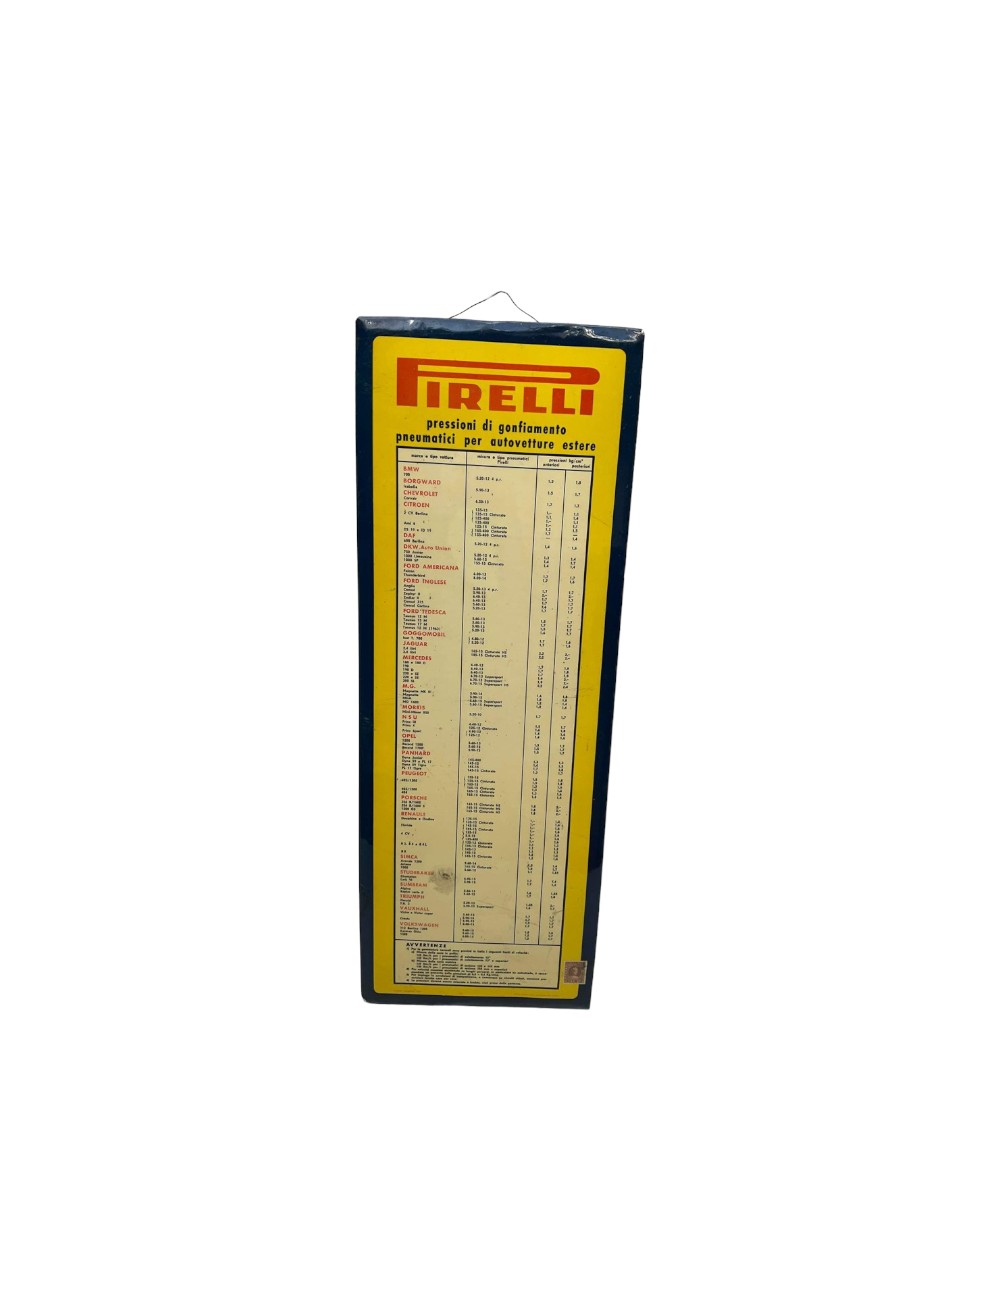 Tabella pubblicitaria Pirelli. Dimensioni: 54 cm x 21 cm